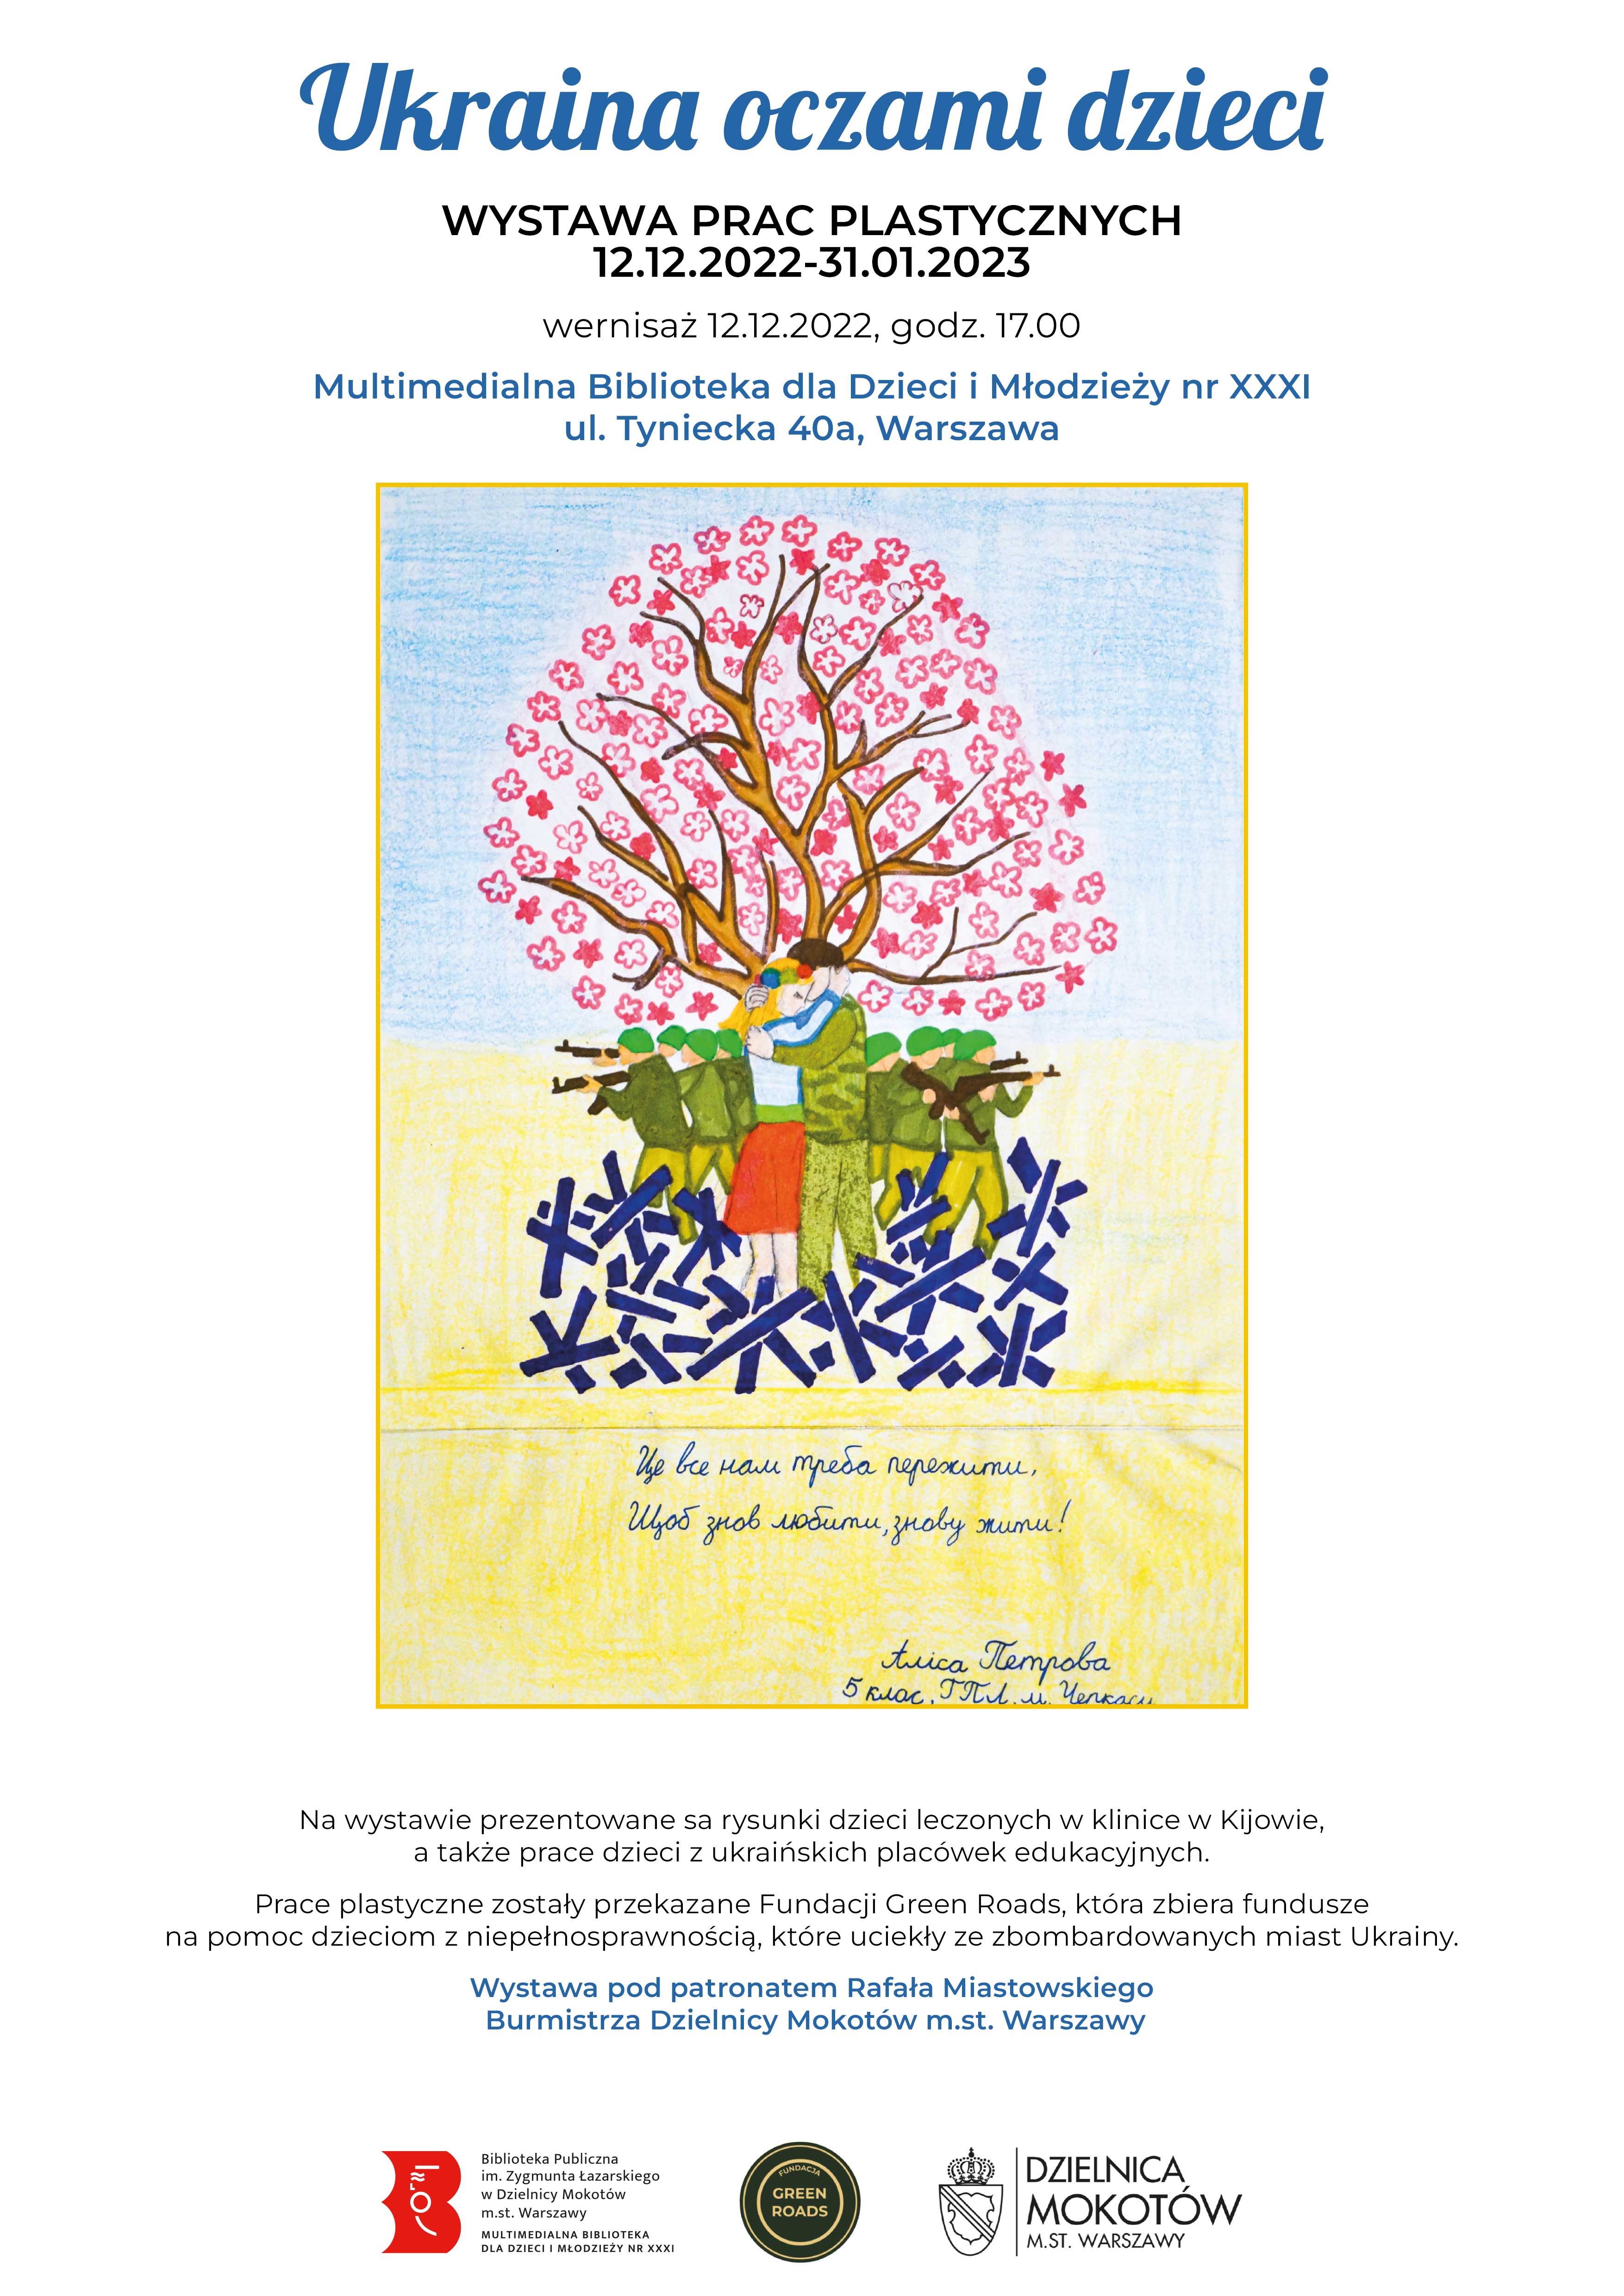 Plakat informujący o wystawie. Rysunek drzewa, pod którym stoją kobieta i mężczyzna